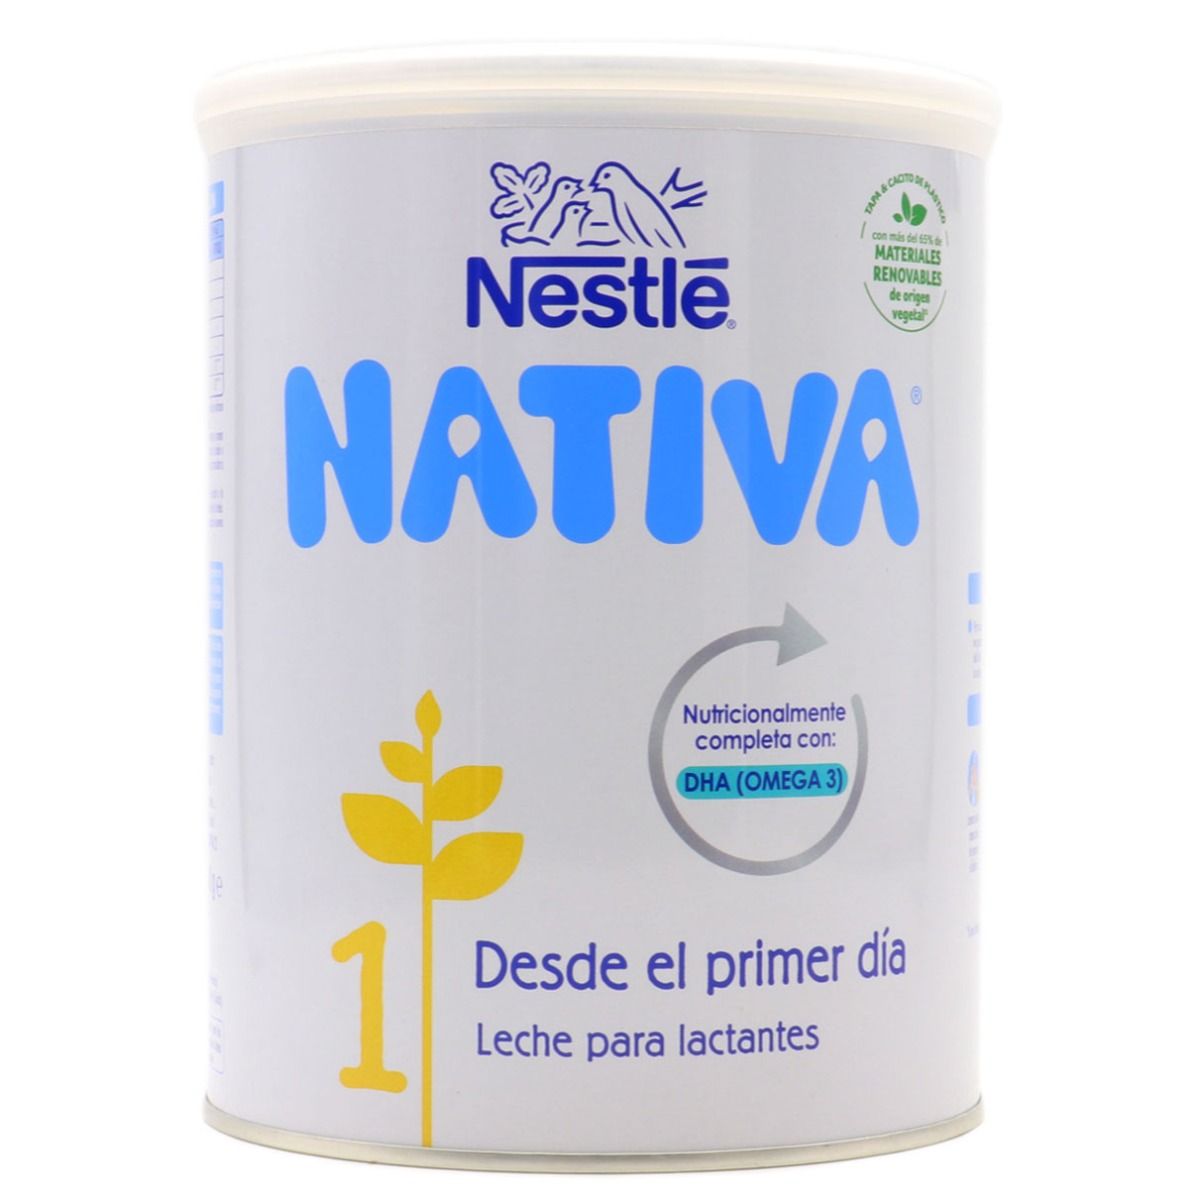 Nestlé Nativa 1 800g